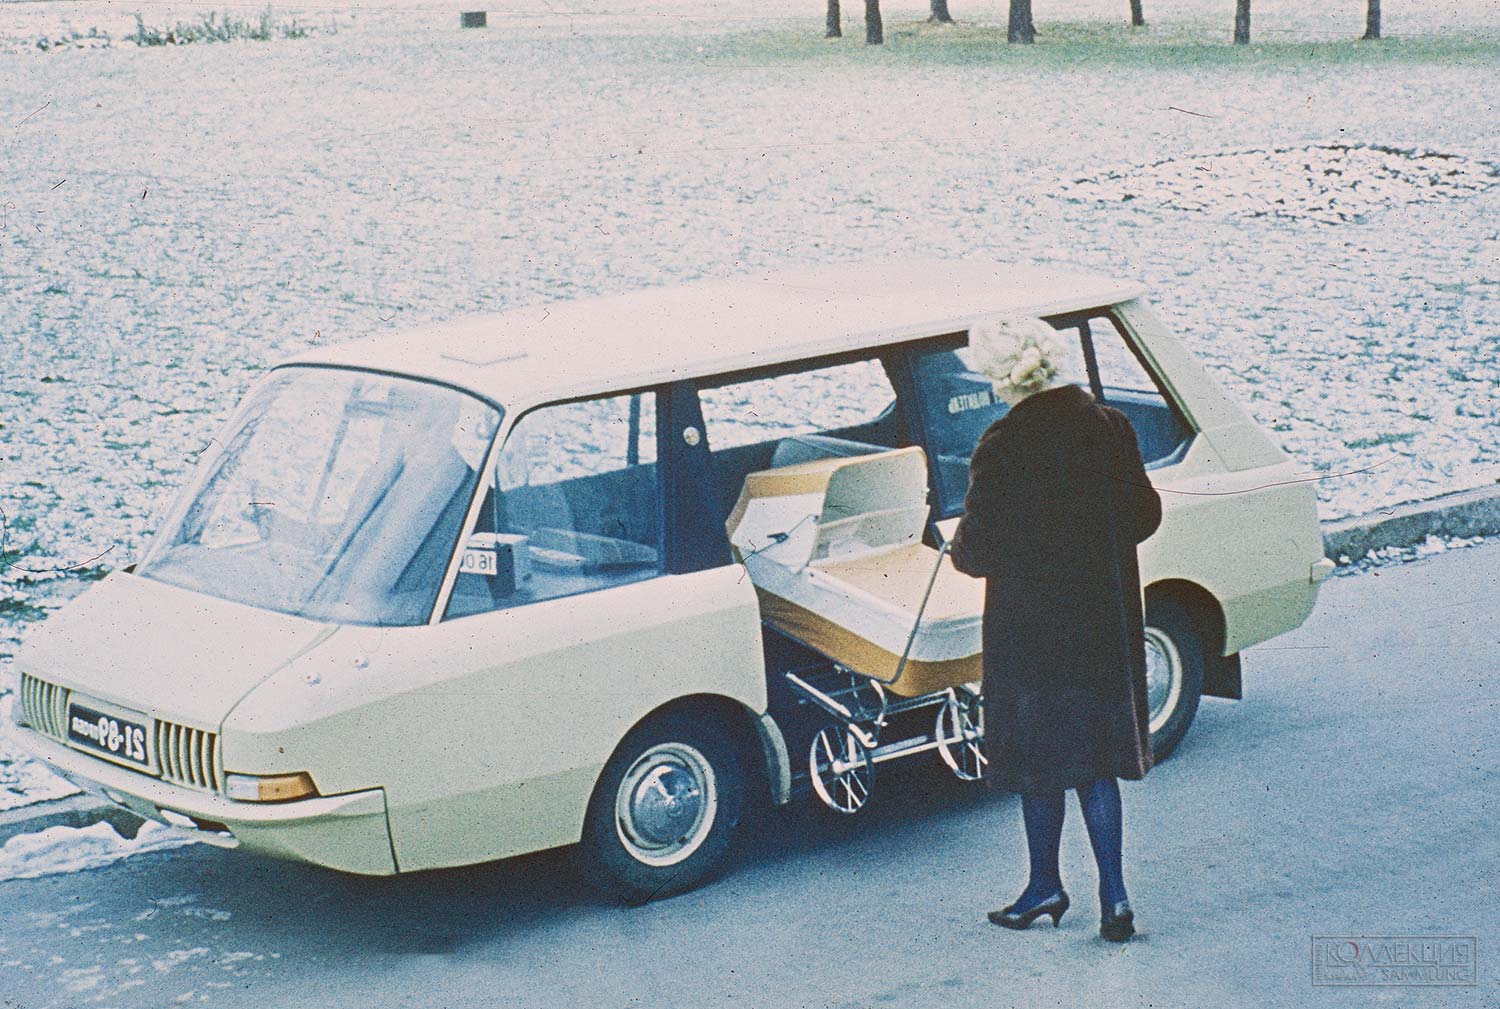 Перспективное такси ВНИИТЭ-ПТ, 1964 год, Фото из архива ВНИИТЭ, из коллекции Московского музея дизайна